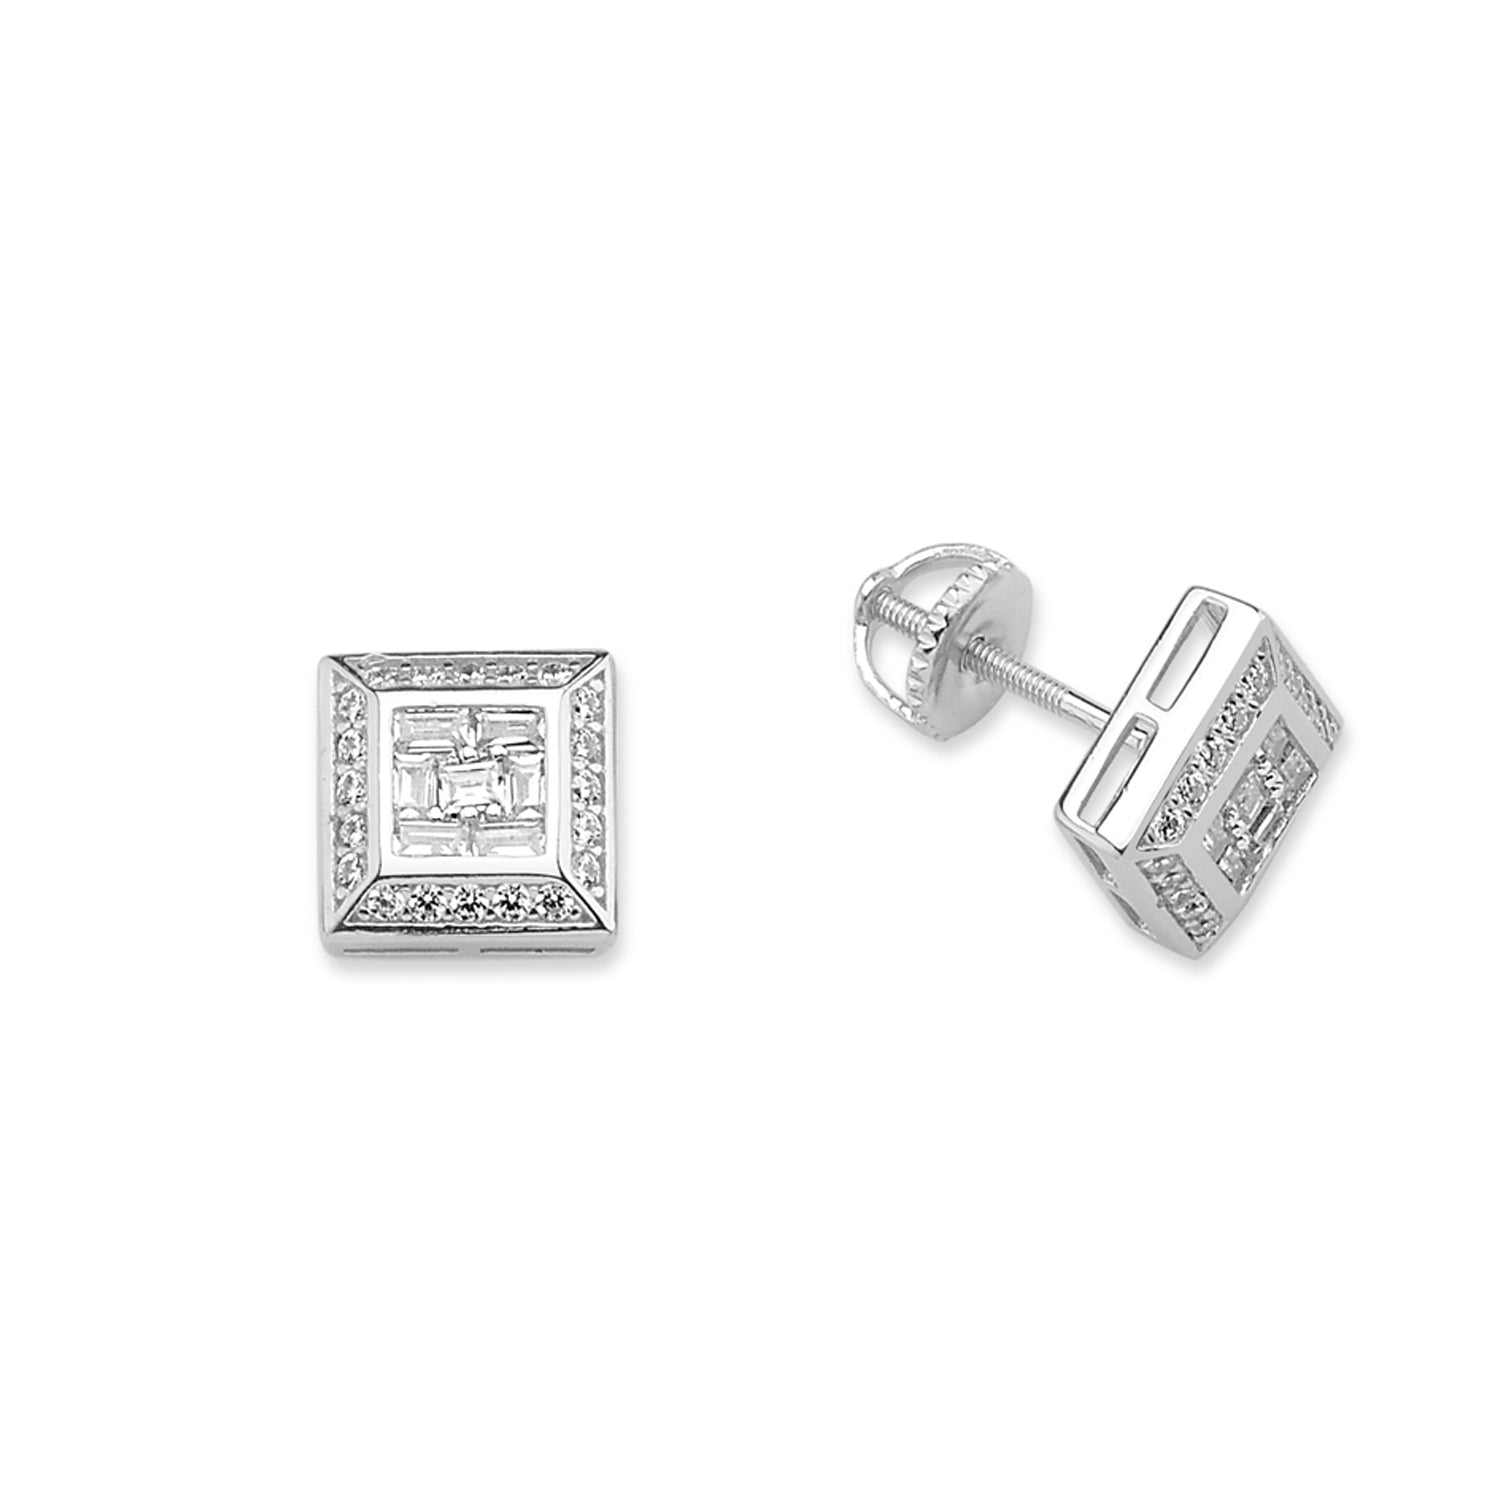 Silver  Baguette CZ Screw-back Cluster Stud Earrings - GVE674